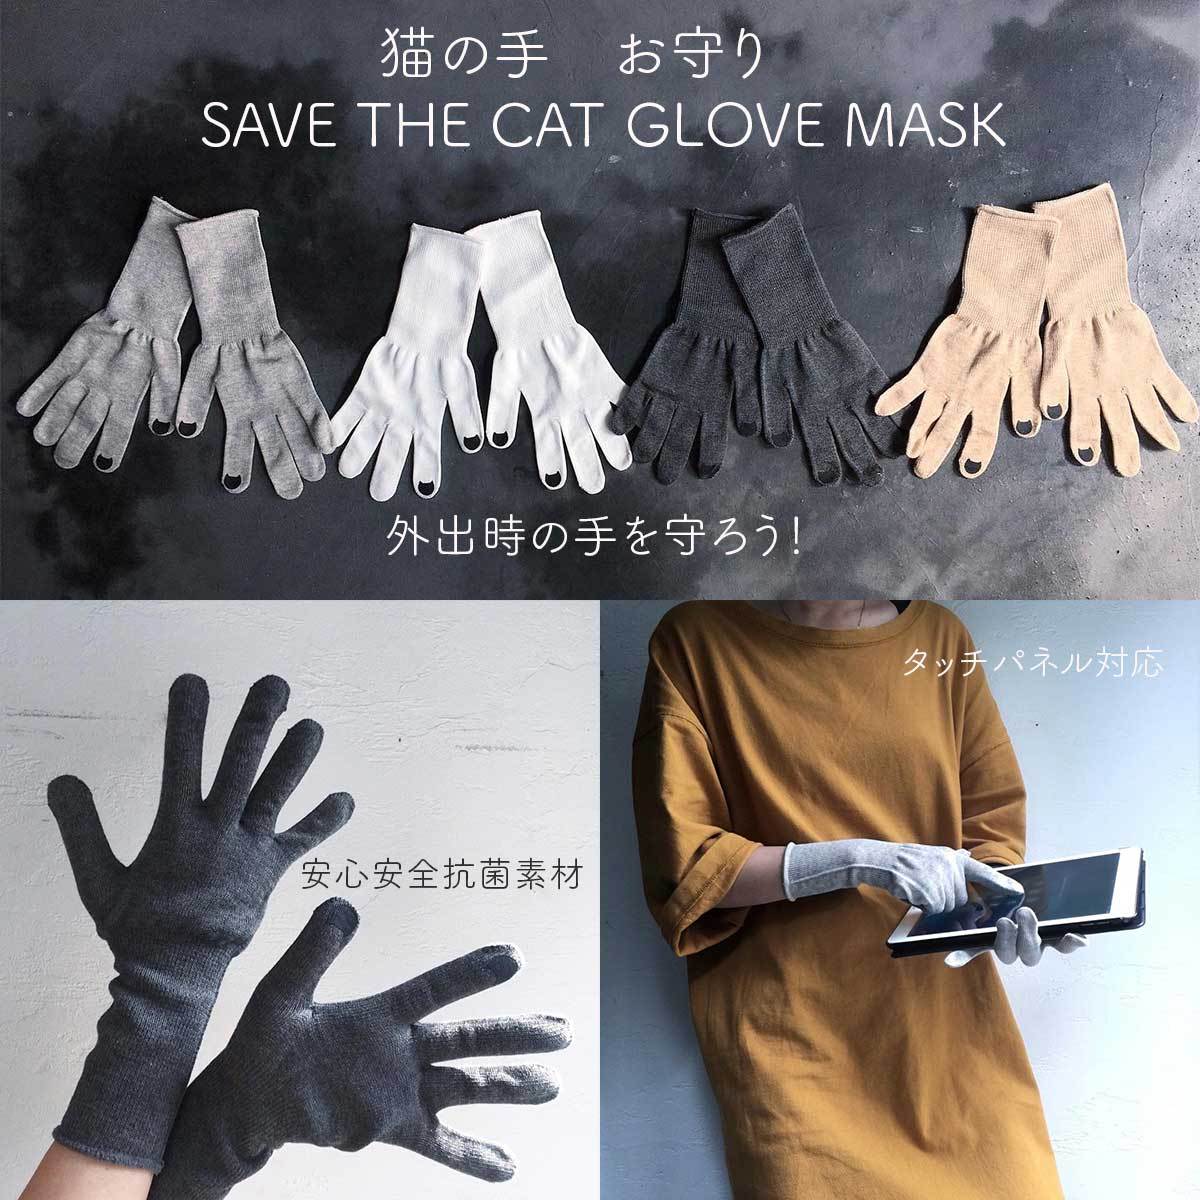 即納可 猫の手お守り Save The Cat Glove Mask 抗菌糸で織り上げた 生地も製造も全て安心の日本製の手を守るハンドマスク グローブ マスク Maskglo ネコリパブリックyahoo 店 通販 Yahoo ショッピング